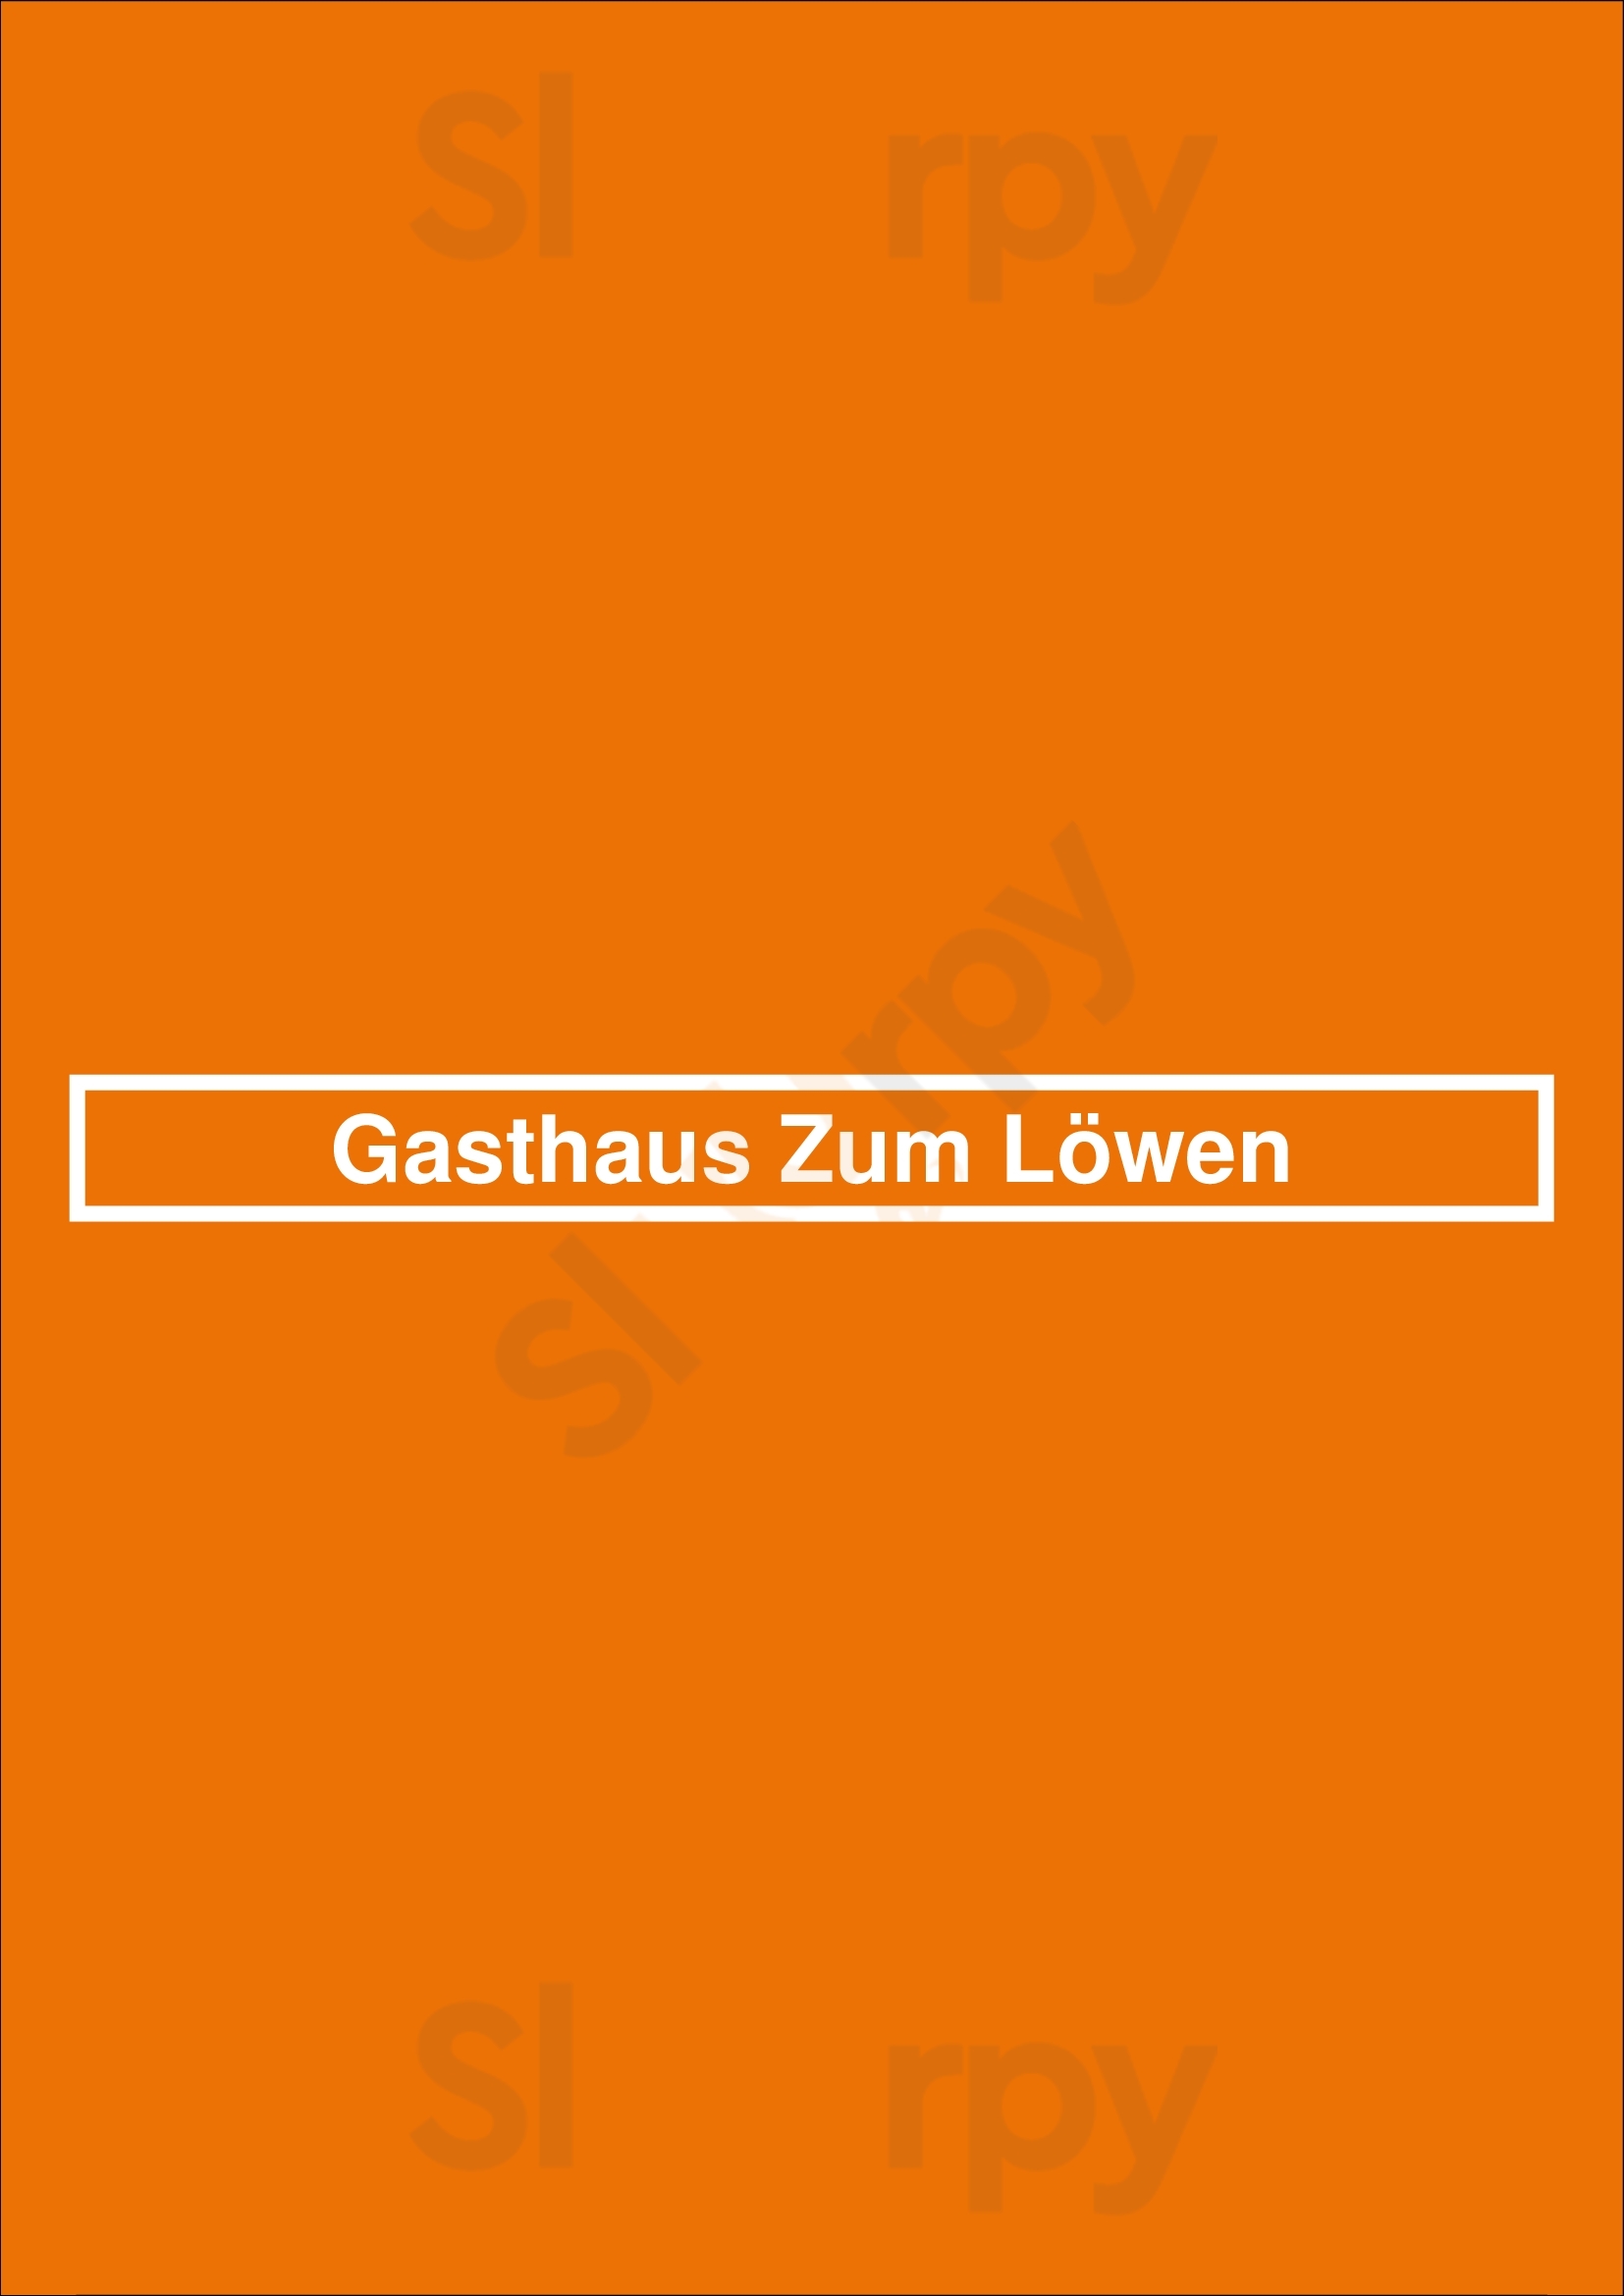 Gasthaus Zum Löwen Ulm Menu - 1